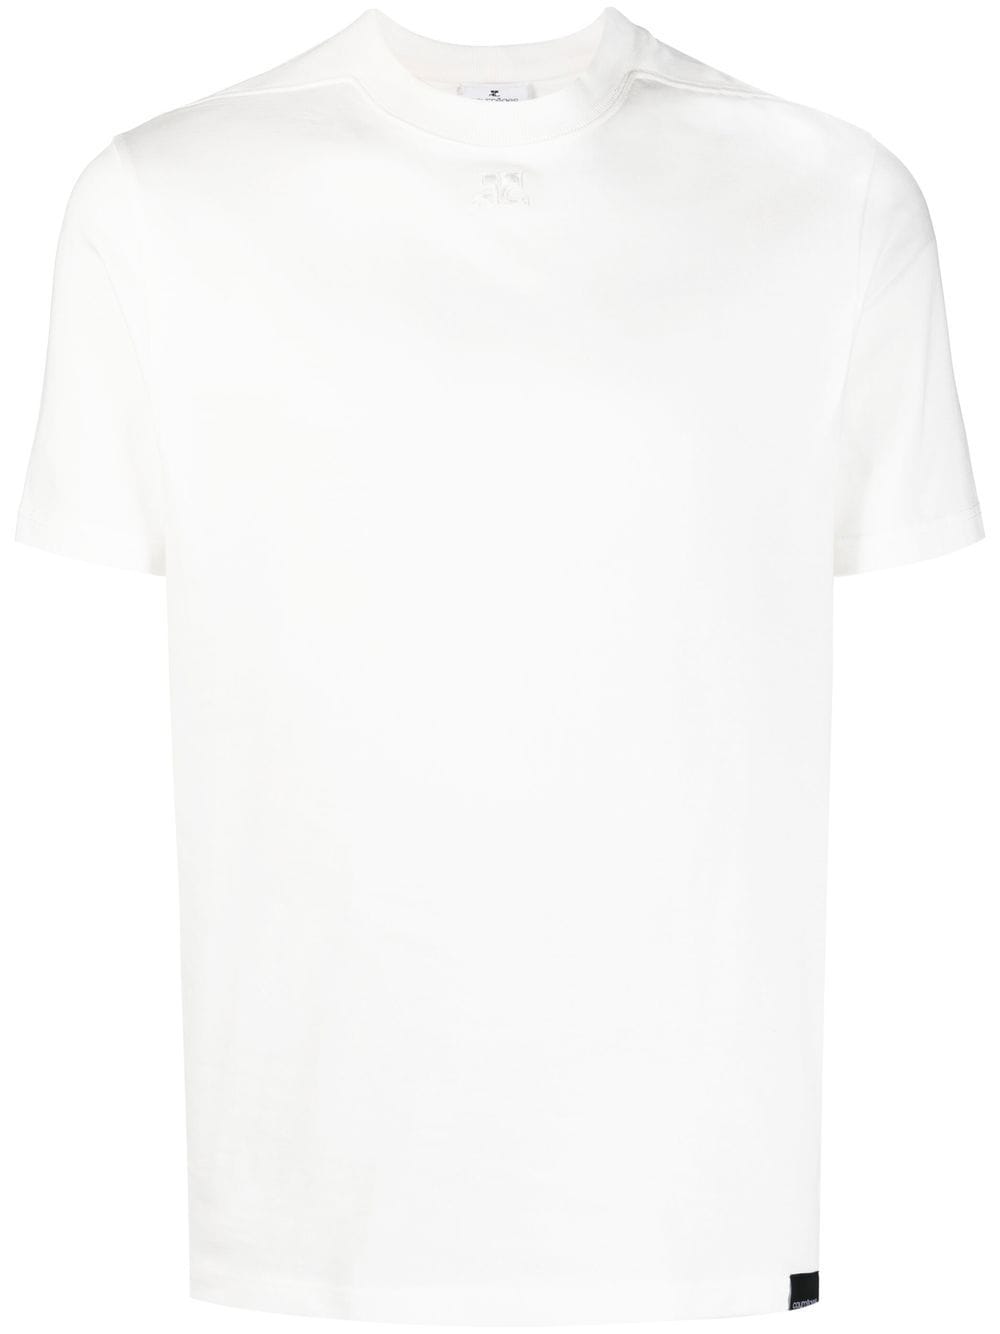 COURRÉGES Logo T-Shirt Heritage White - MAISONDEFASHION.COM